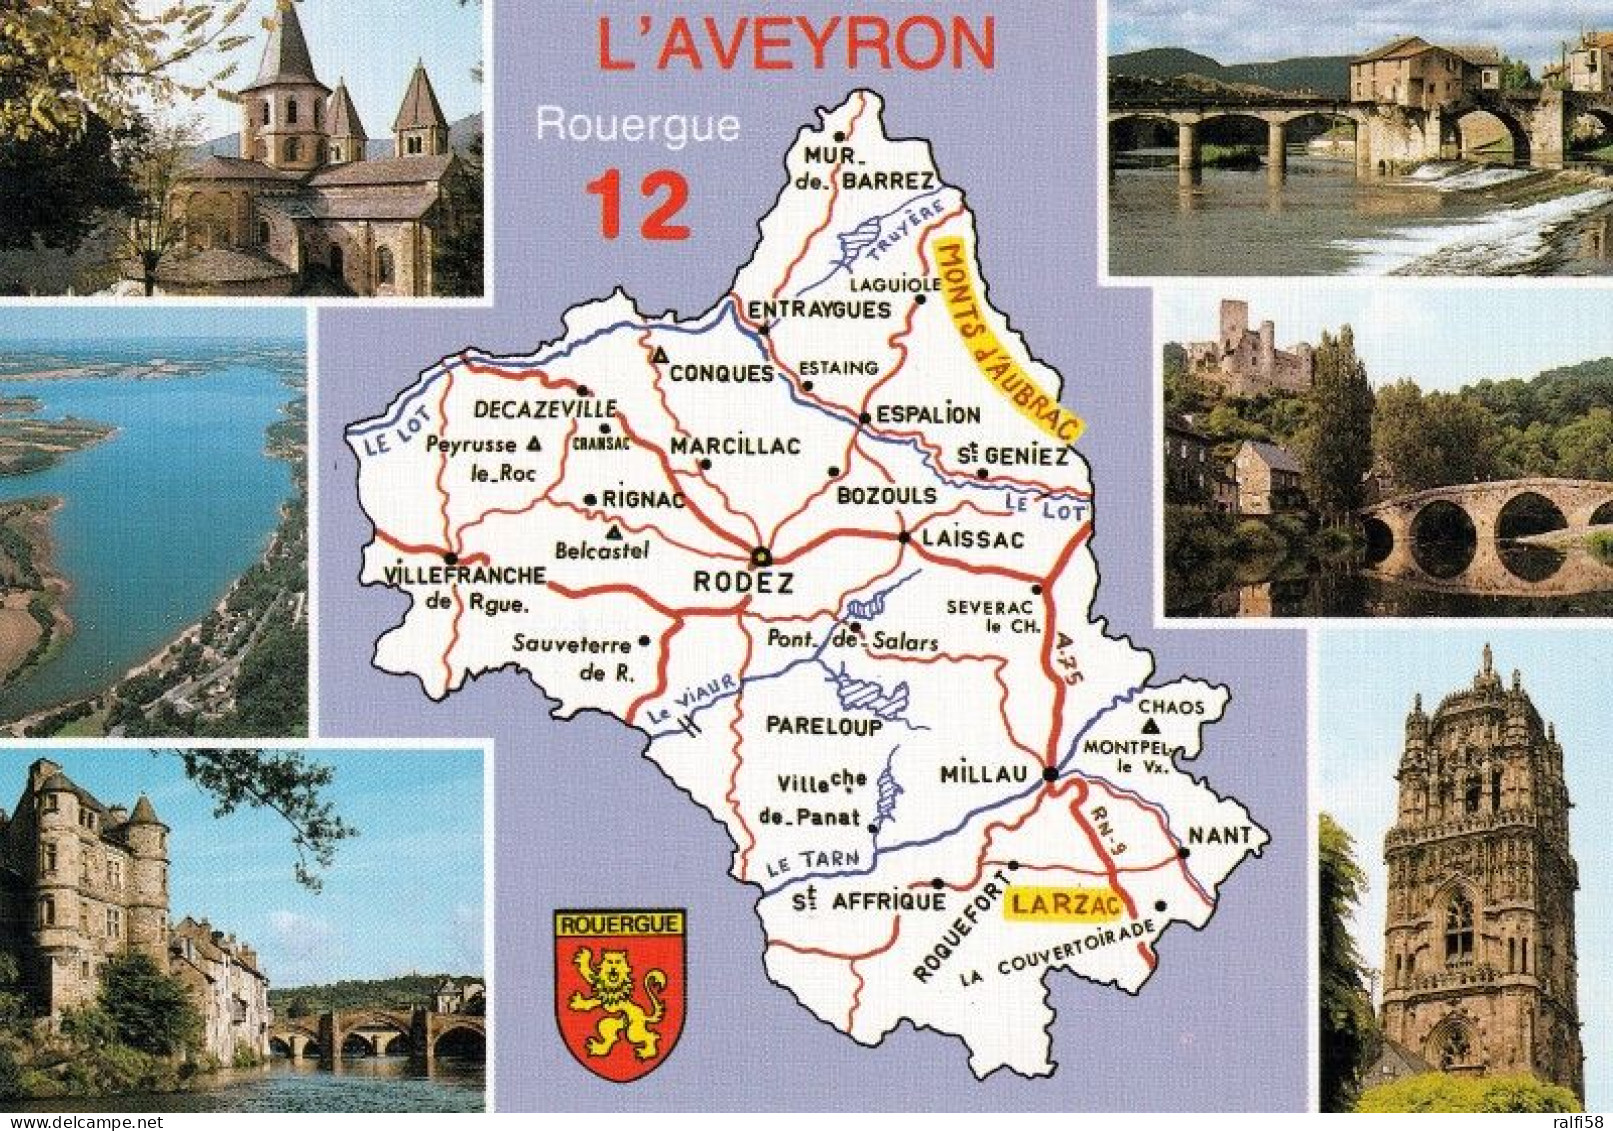 2 Map Of France * 2 Ansichtskarten Mit Der Landkarte - Département Aveyron Und Sehenswürdigkeiten - Ordnungsnummer 12 * - Landkaarten